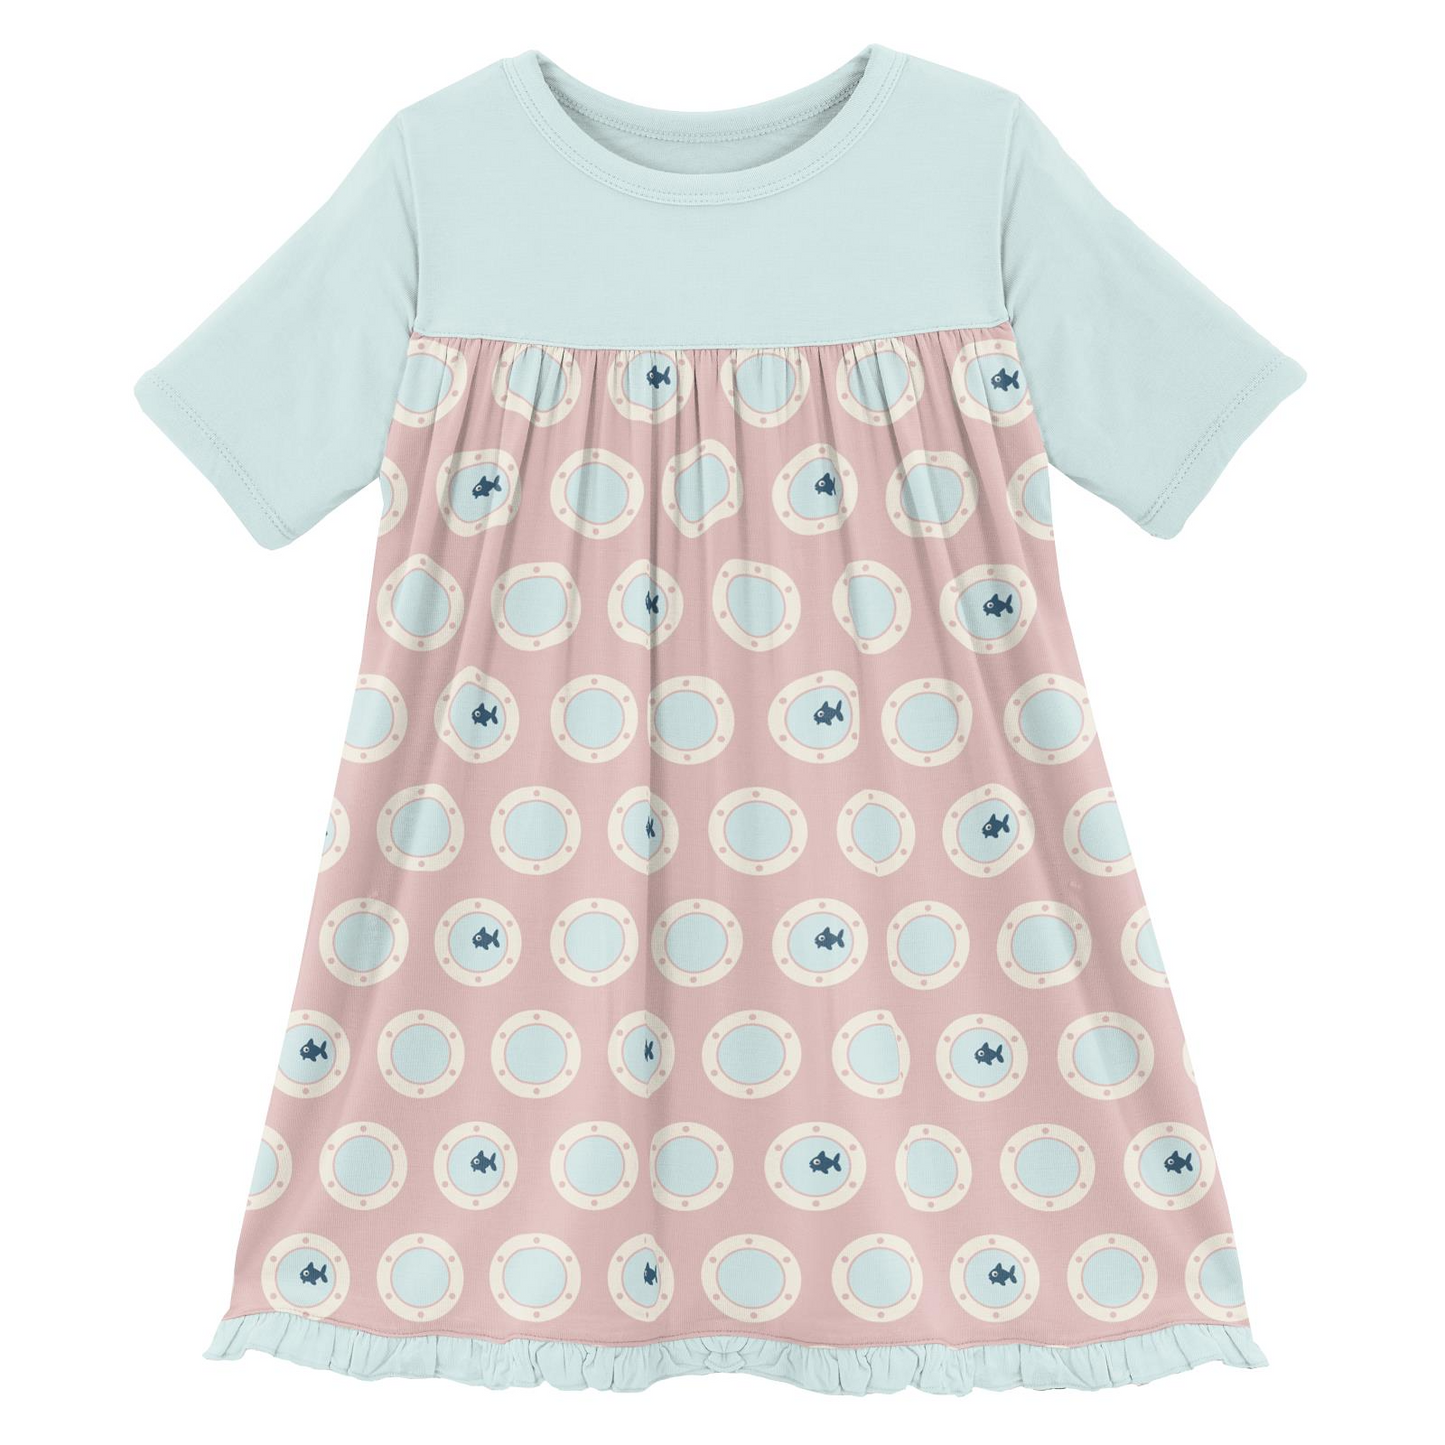 Classic Swing Dress (Short Sleeve) - Baby Rose Porthole